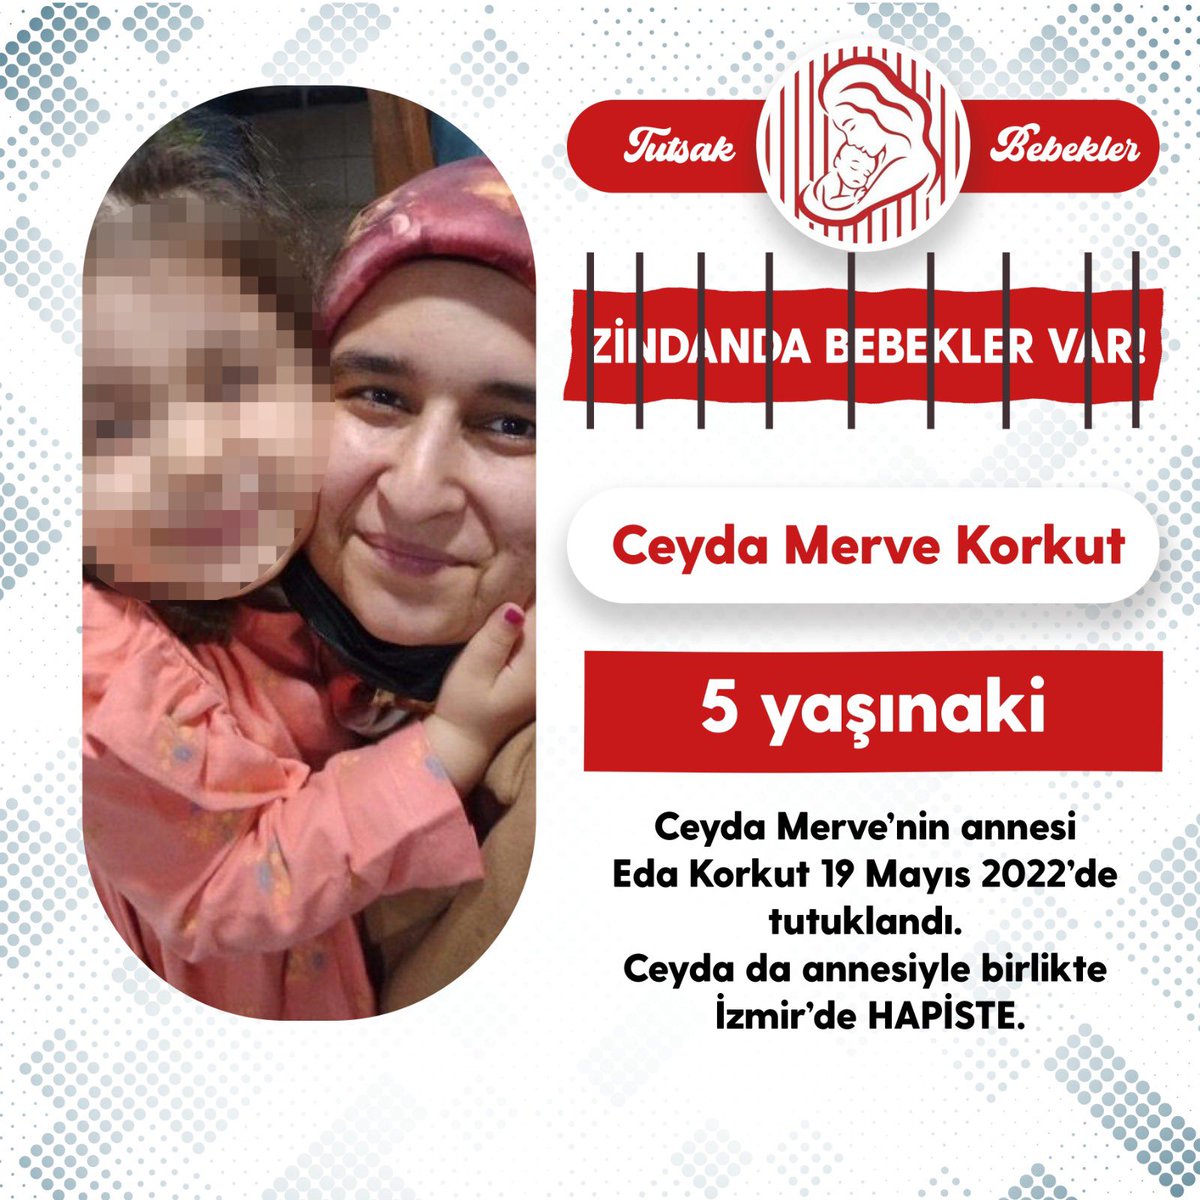 ZİNDANDA BEBEKLER VAR! Murat Karaduran 9 aylıkken girdiği Osmaniye Cezaevi'nde 18 aylık oldu. Bebeklerin yeri cezaevi değil!!! TutsakÇocukların 23Nisanı @nevsinmengu #23Nisan #23Nisan1920